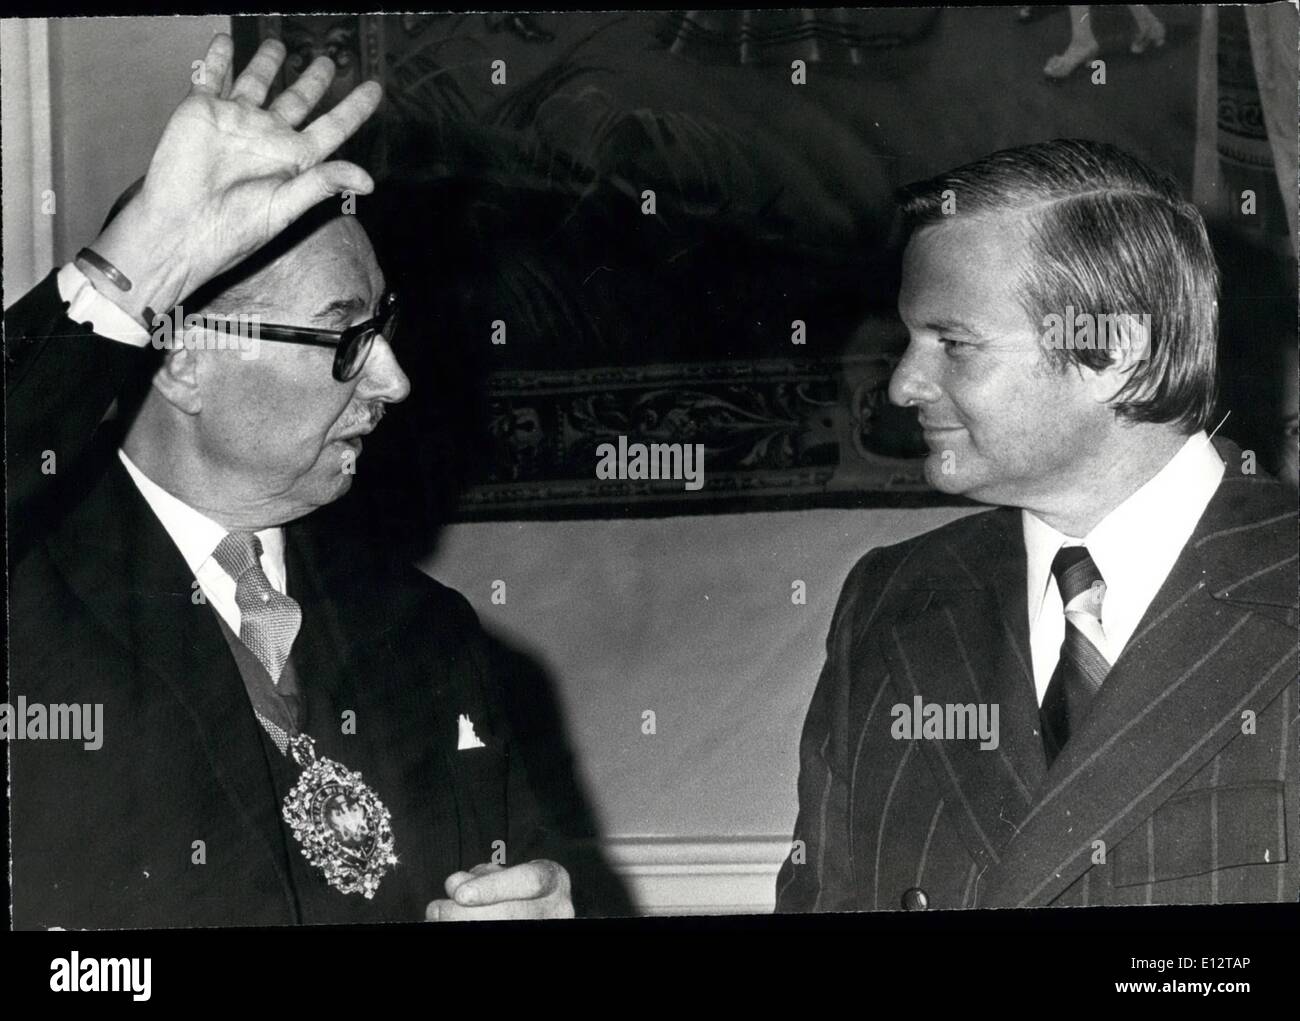 El 24 de febrero, 2012 - Davis atiende almuerzo: El primer ministro de Ontario, W.G. Davis, a la derecha, conversa con el Alcalde de Londres, Lord Mais, quien lo recibió como llegó a la Mansión Houe, almuerzo en su honor. Foto de stock